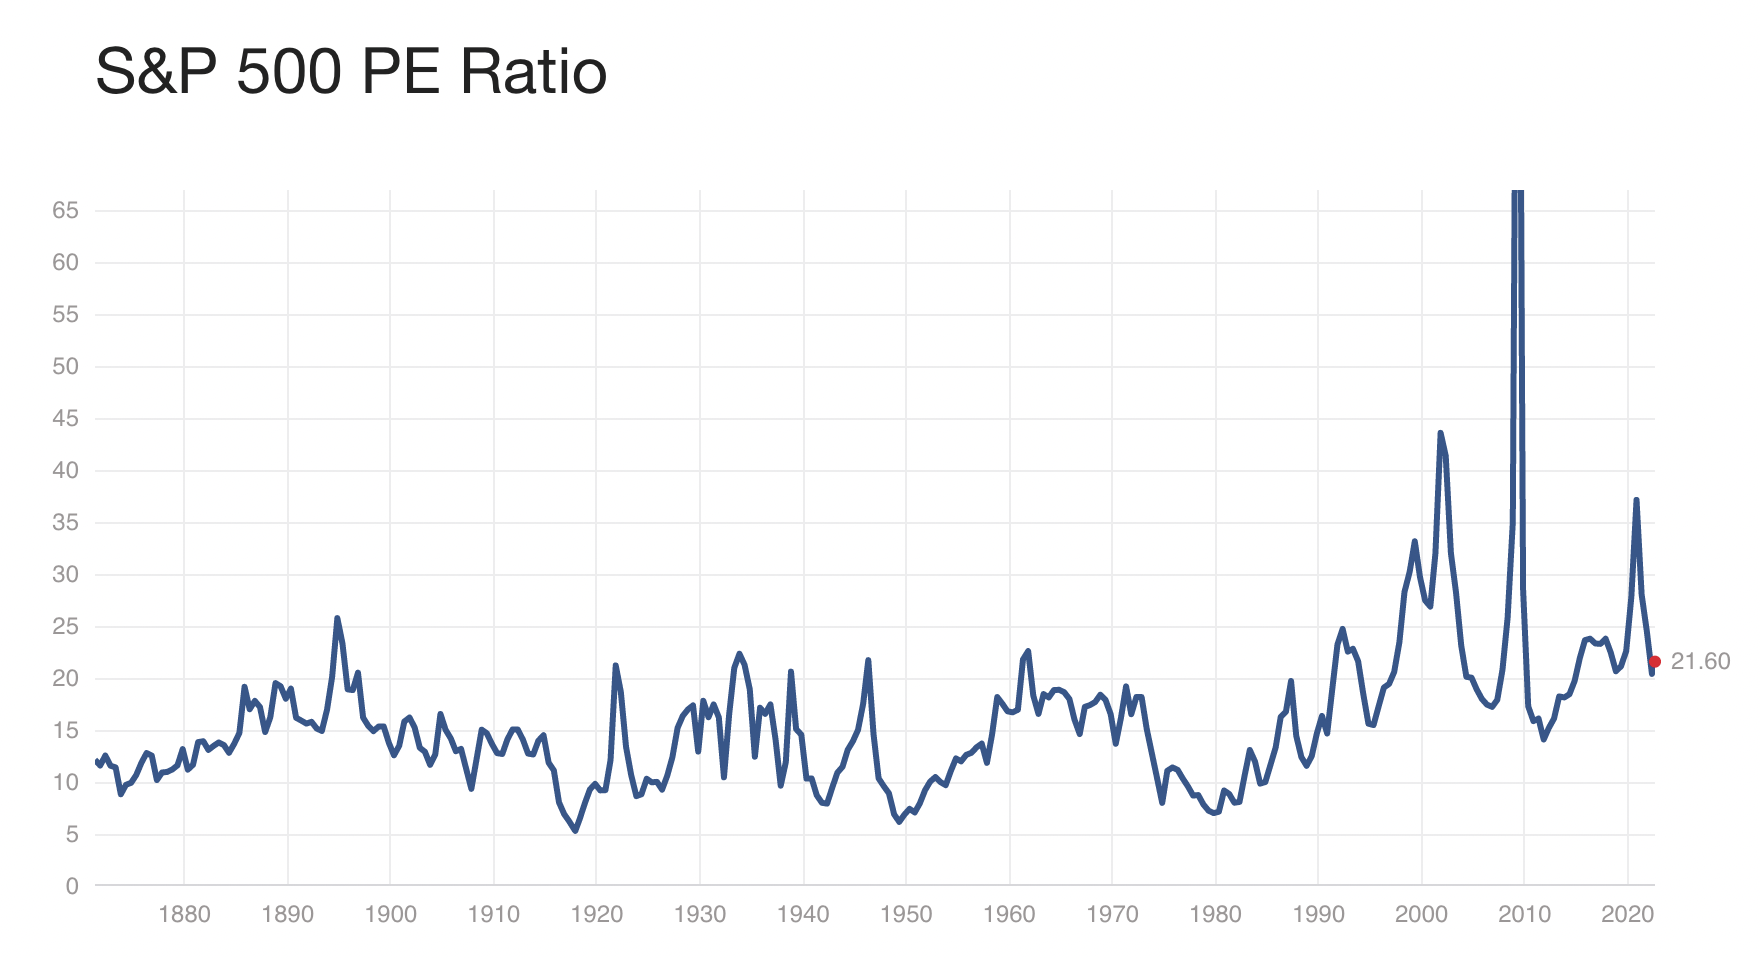 標普500指數PE Ratio，在1990年前大部份時間在5－20之間徊徘，而1990年後近有少數時間會低於20